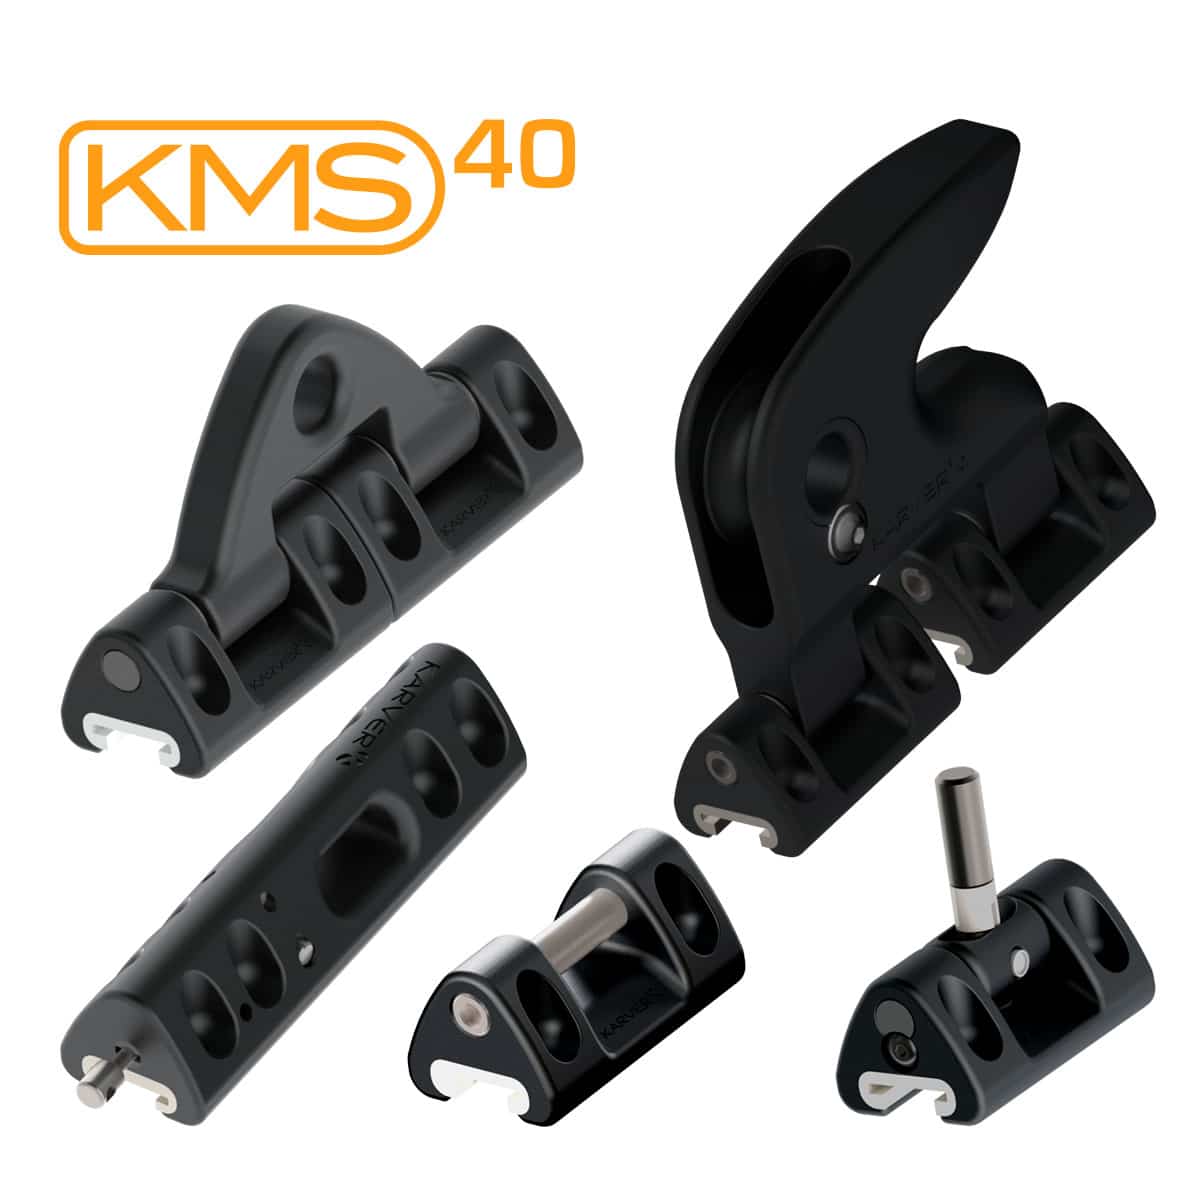 KMS40